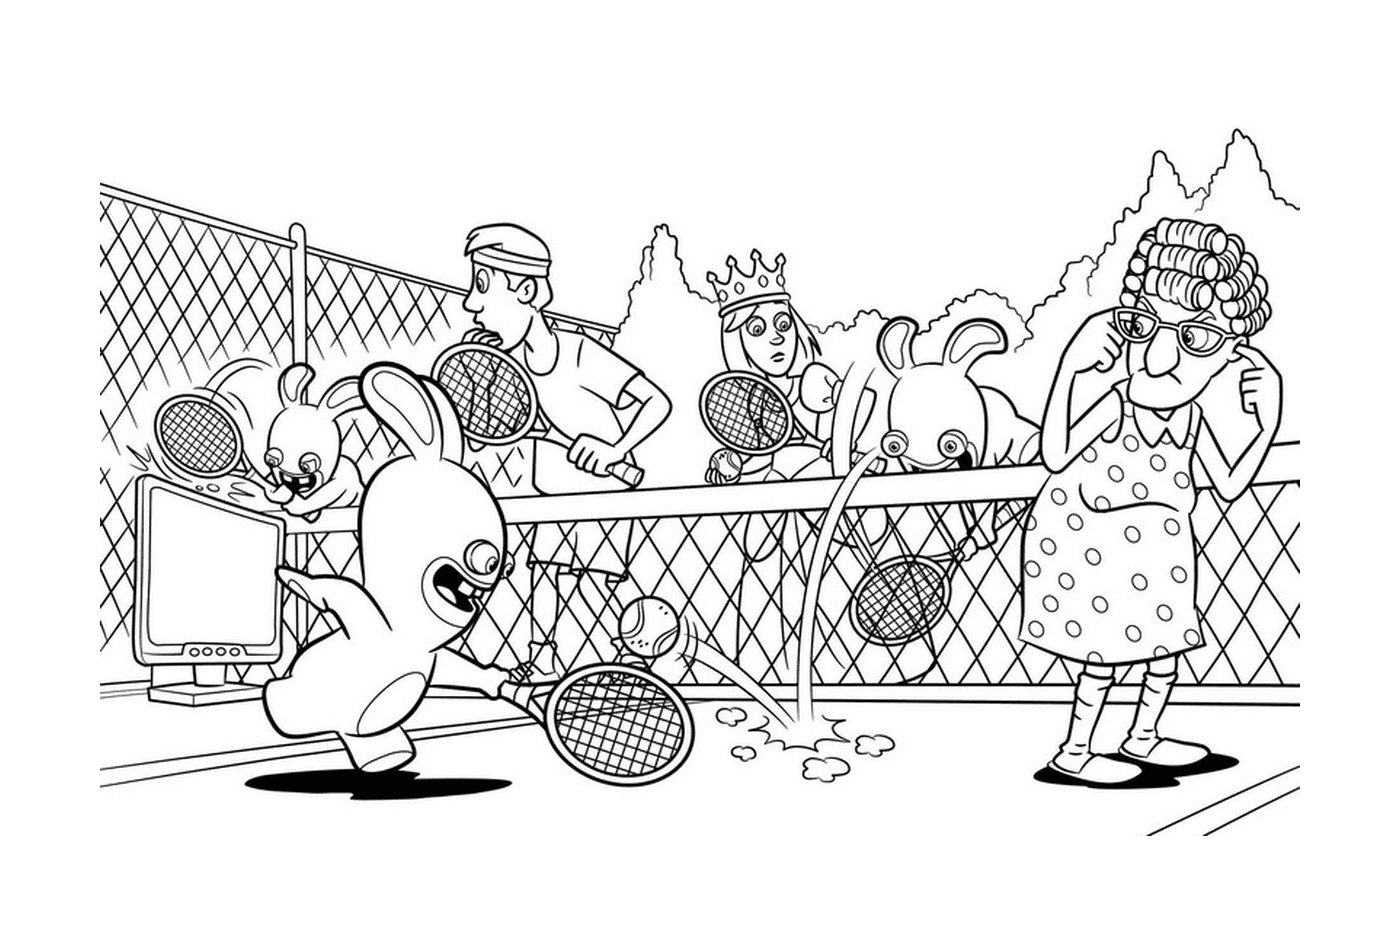 lapins cretins jouent au tennis